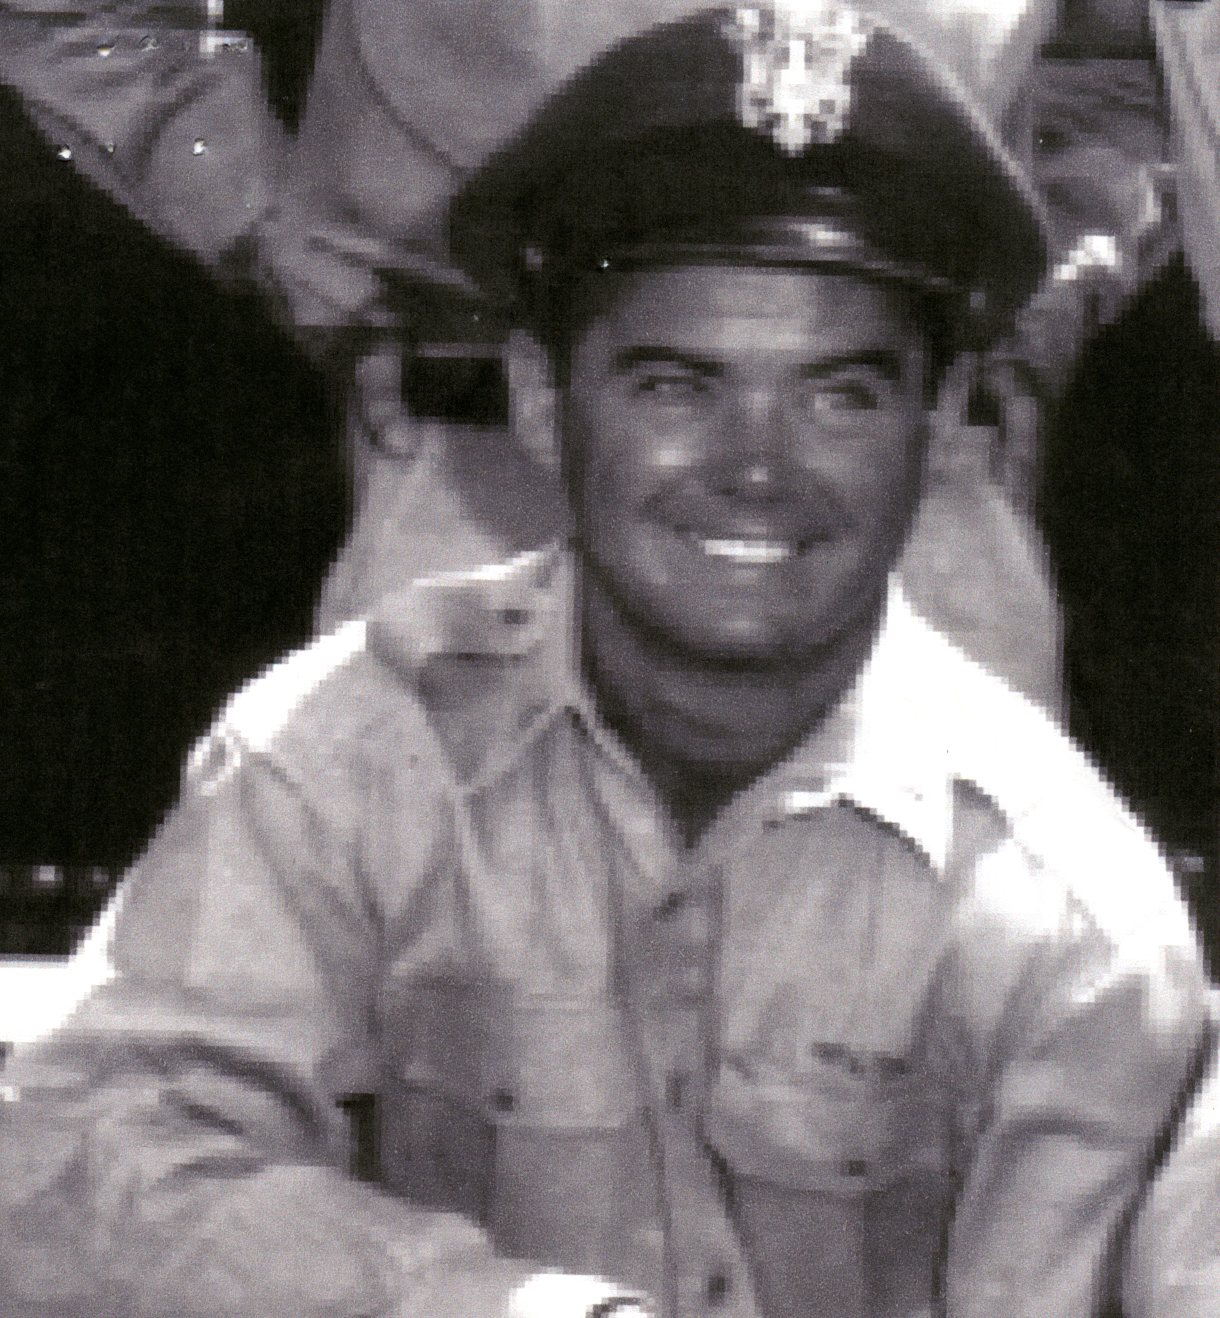 Lt. Joseph P. Loughnane